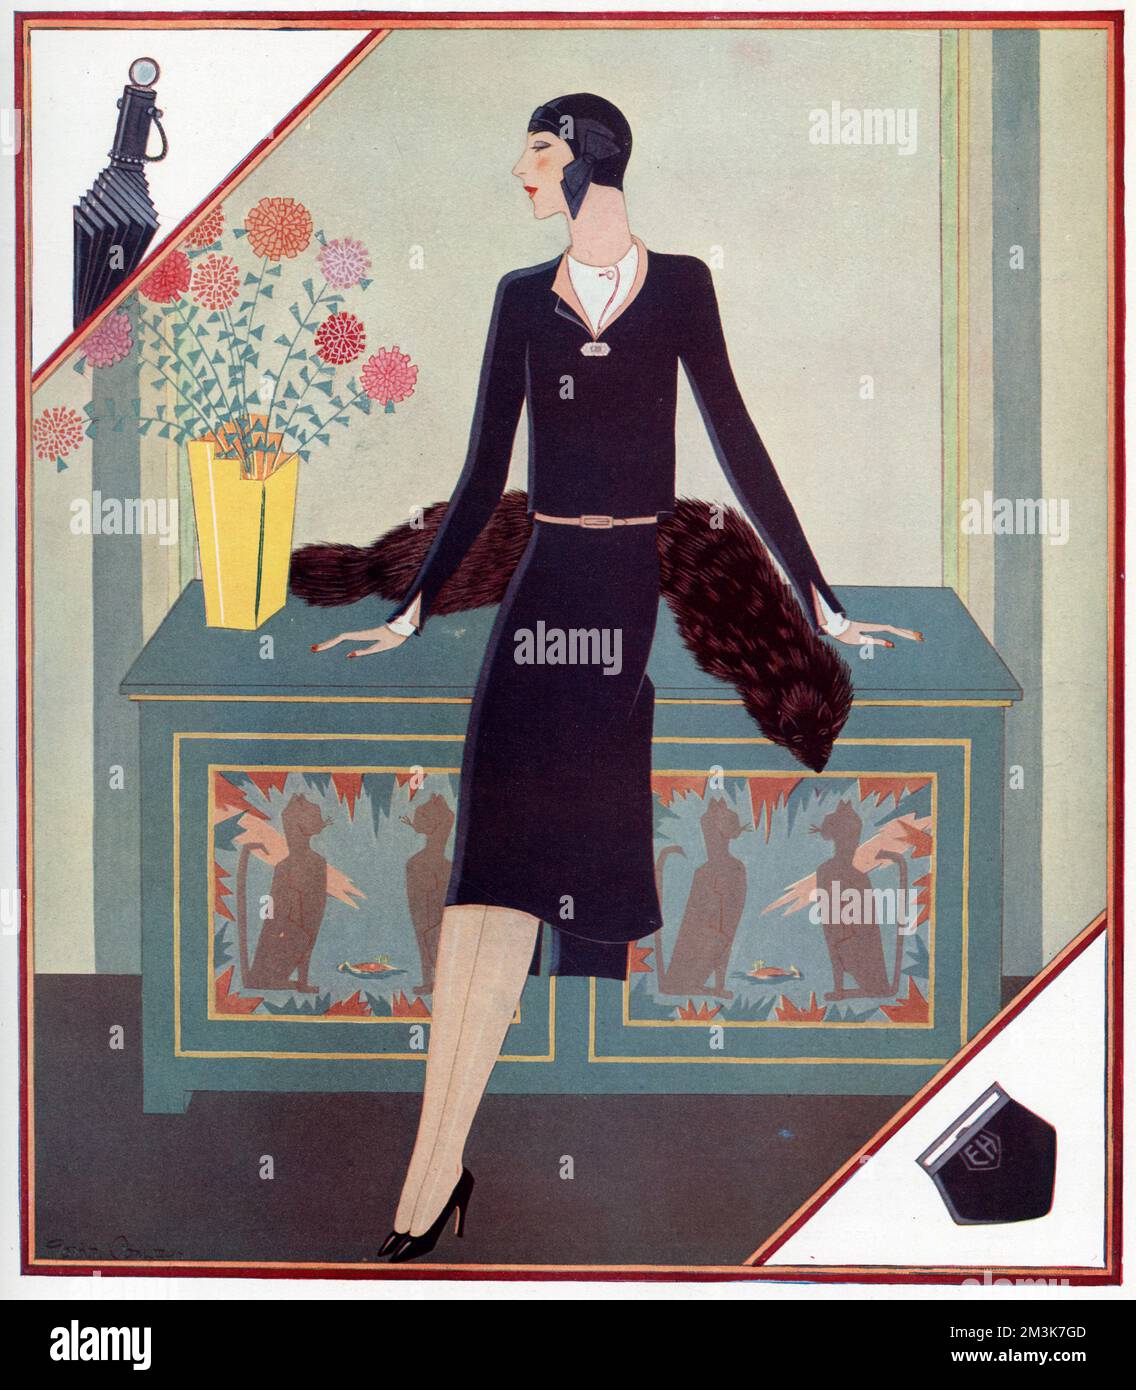 Une illustration de la mode de Gordon Conway montrant un modèle portant un costume en laine porté avec une chemise en soie sans col. Une stole en fourrure peut être vue sur la table derrière le modèle. 1929 Banque D'Images